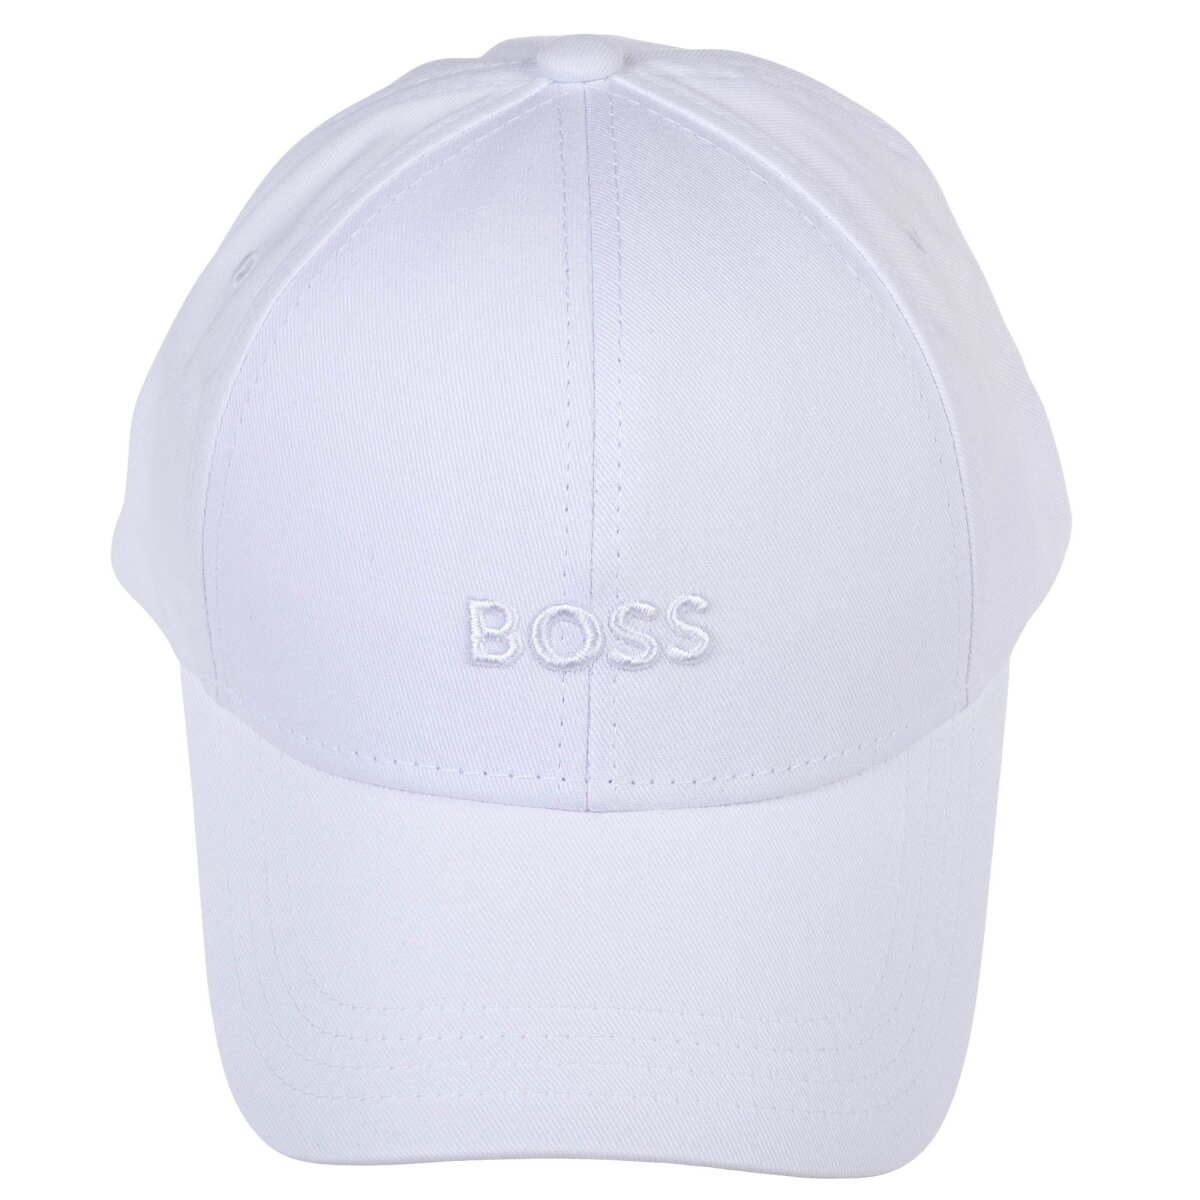 BOSS Herren Cap - Zed, Baseball Cap, Baumwolle, Logo, One Size, einfa,  27,95 €